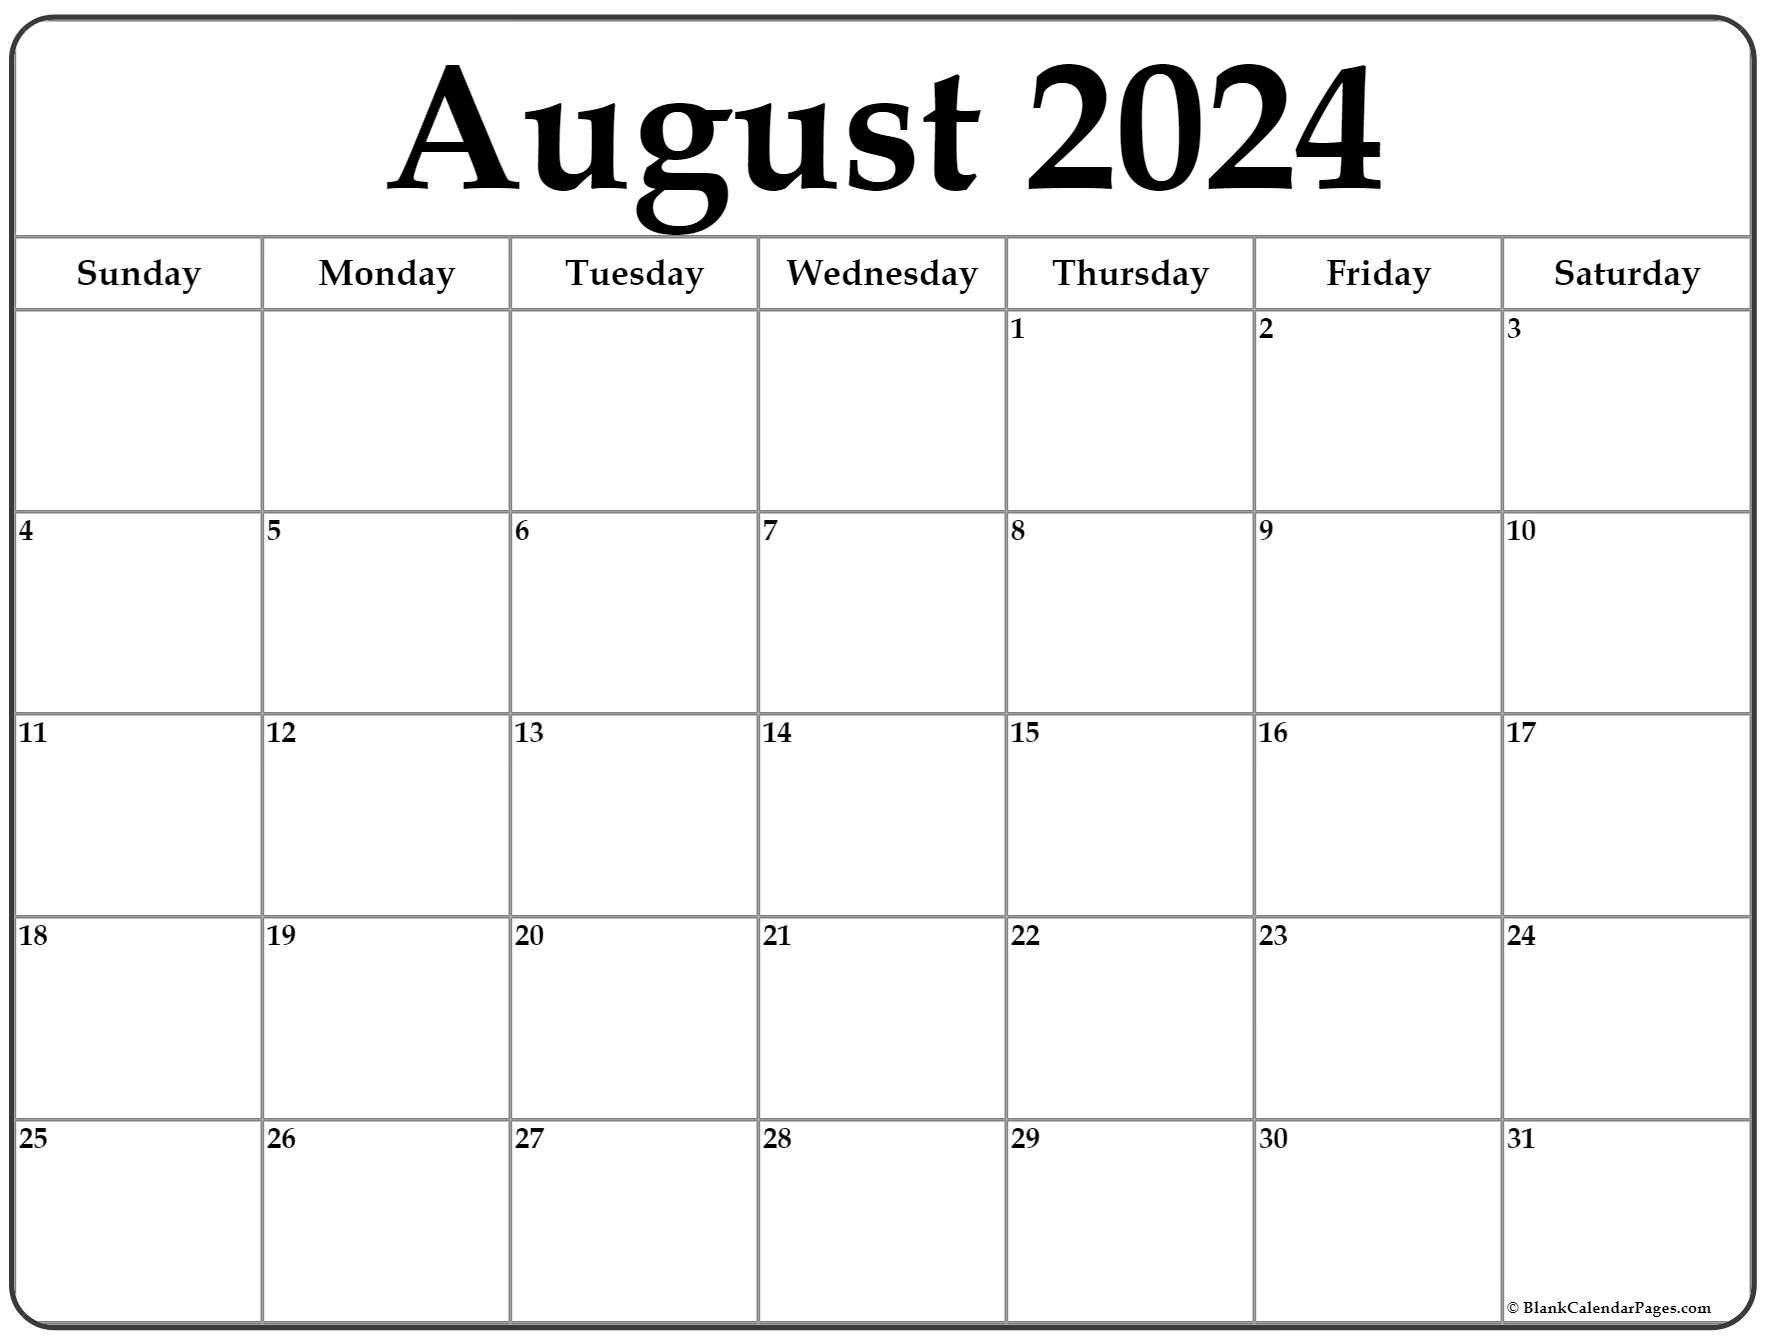 June July August 2022 Calendar Printable August 2022 Calendar | Free Printable Calendar Templates